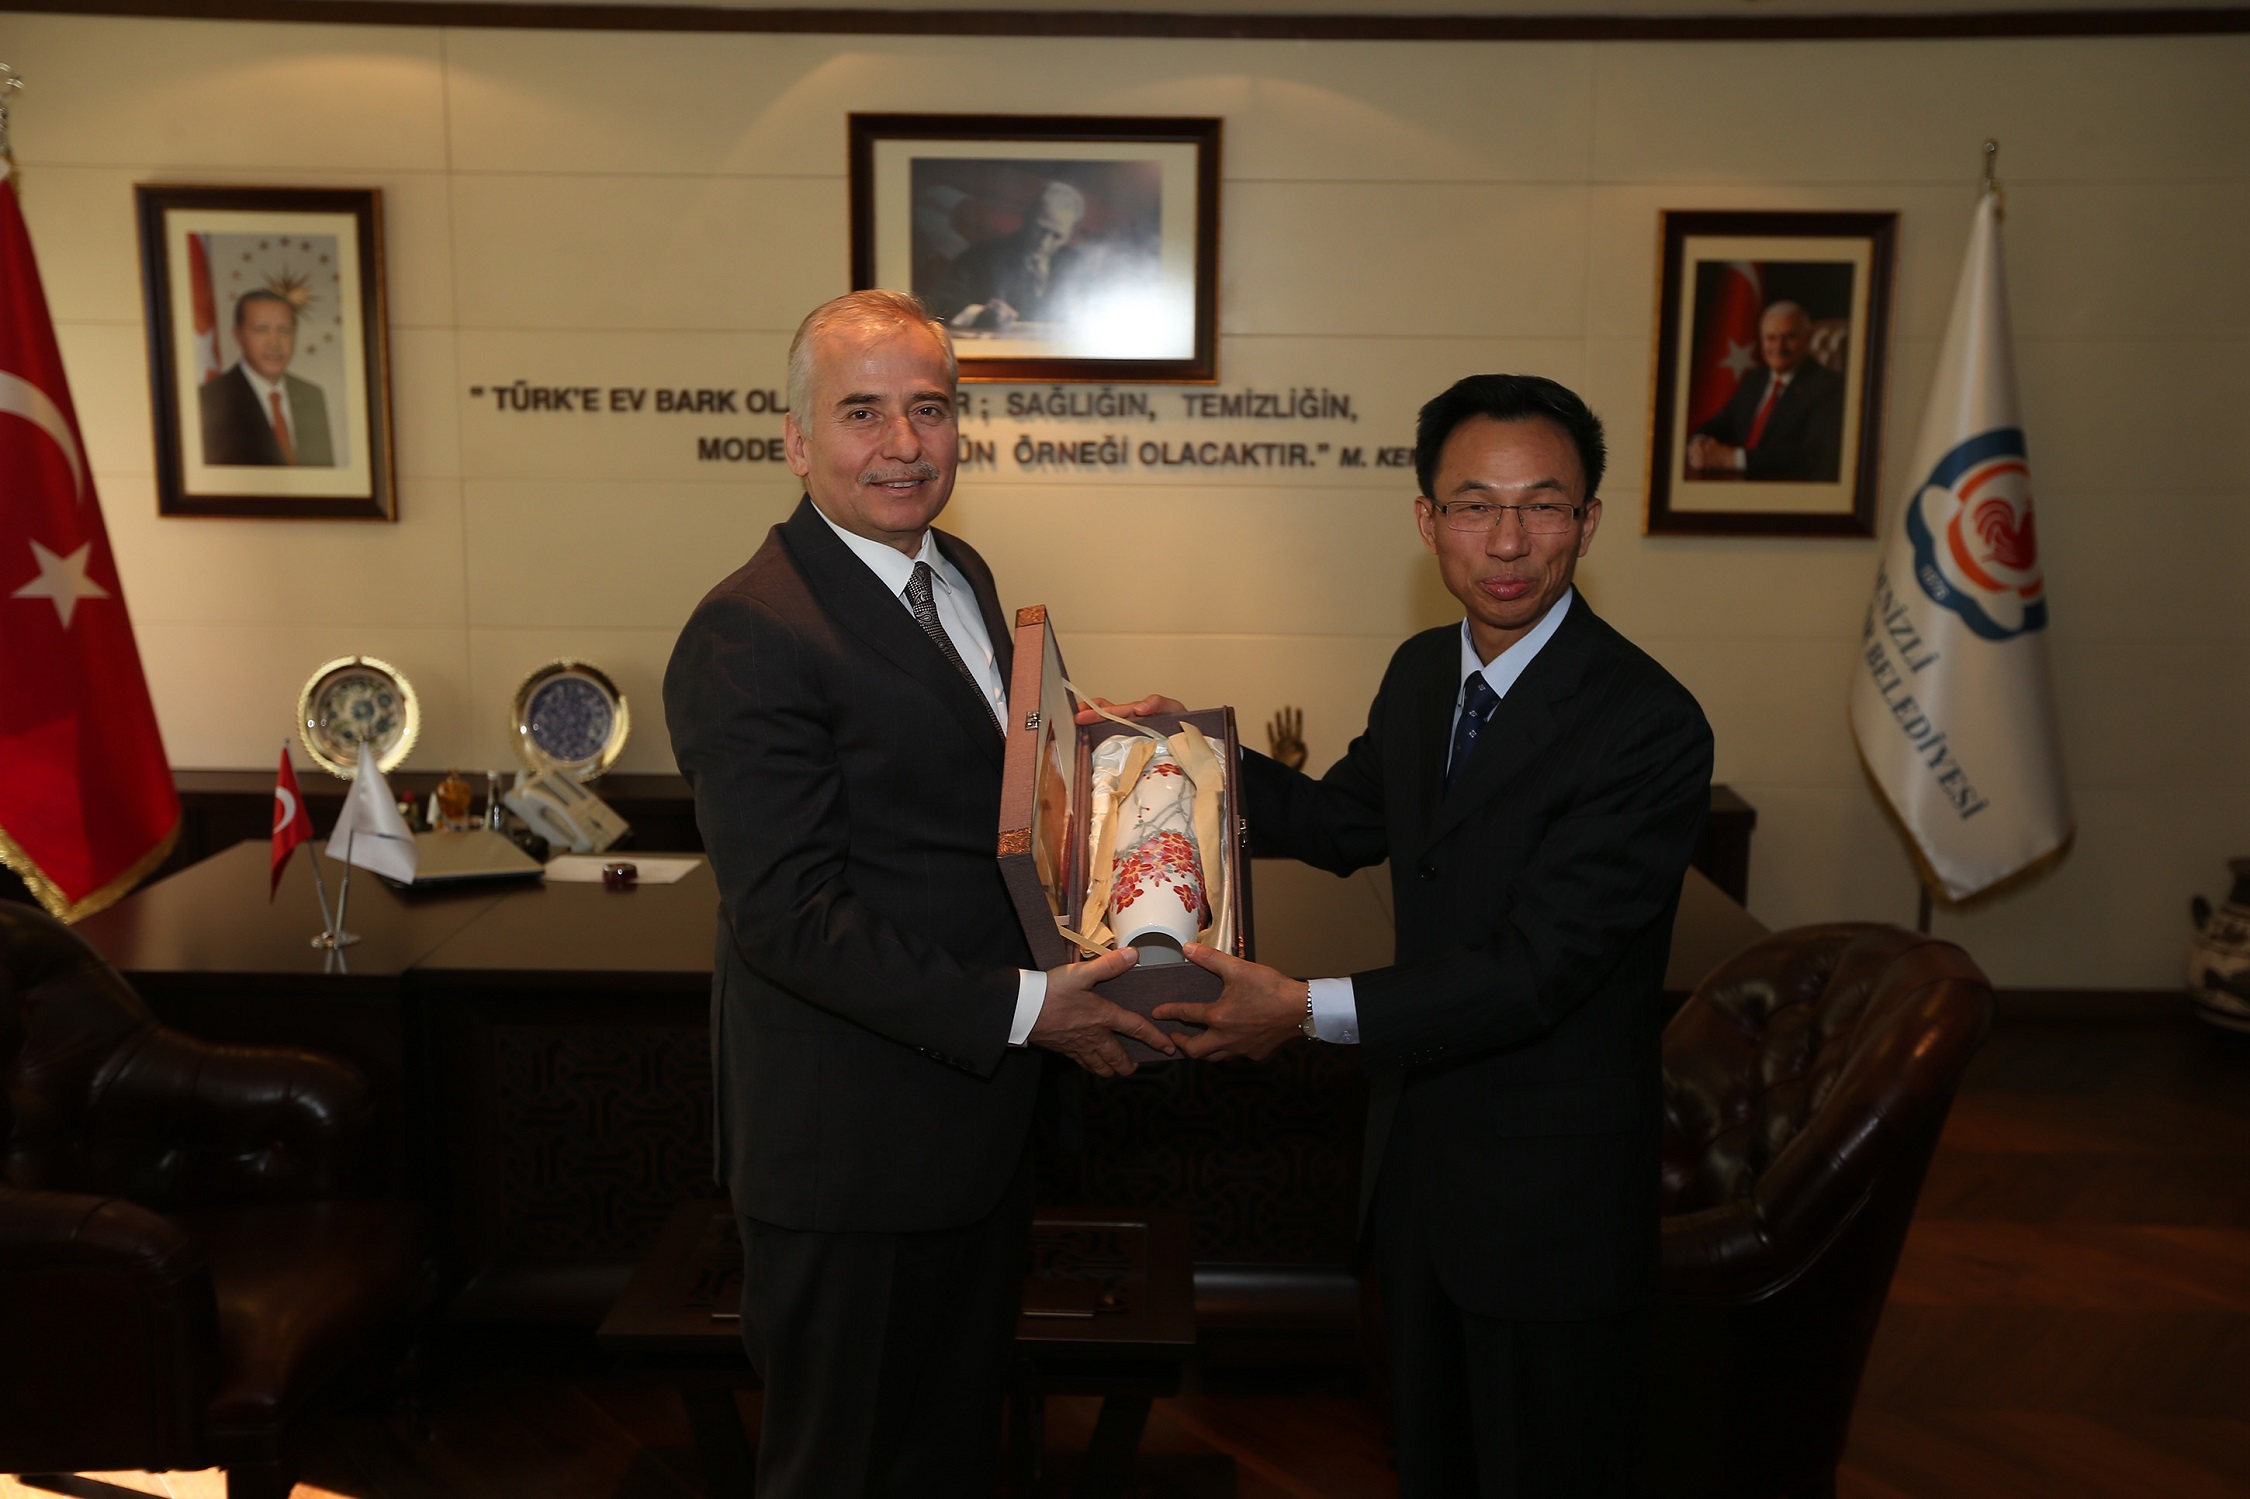 Çin Ankara Büyükelçisi’nden Başkan Zolan’a ziyaret